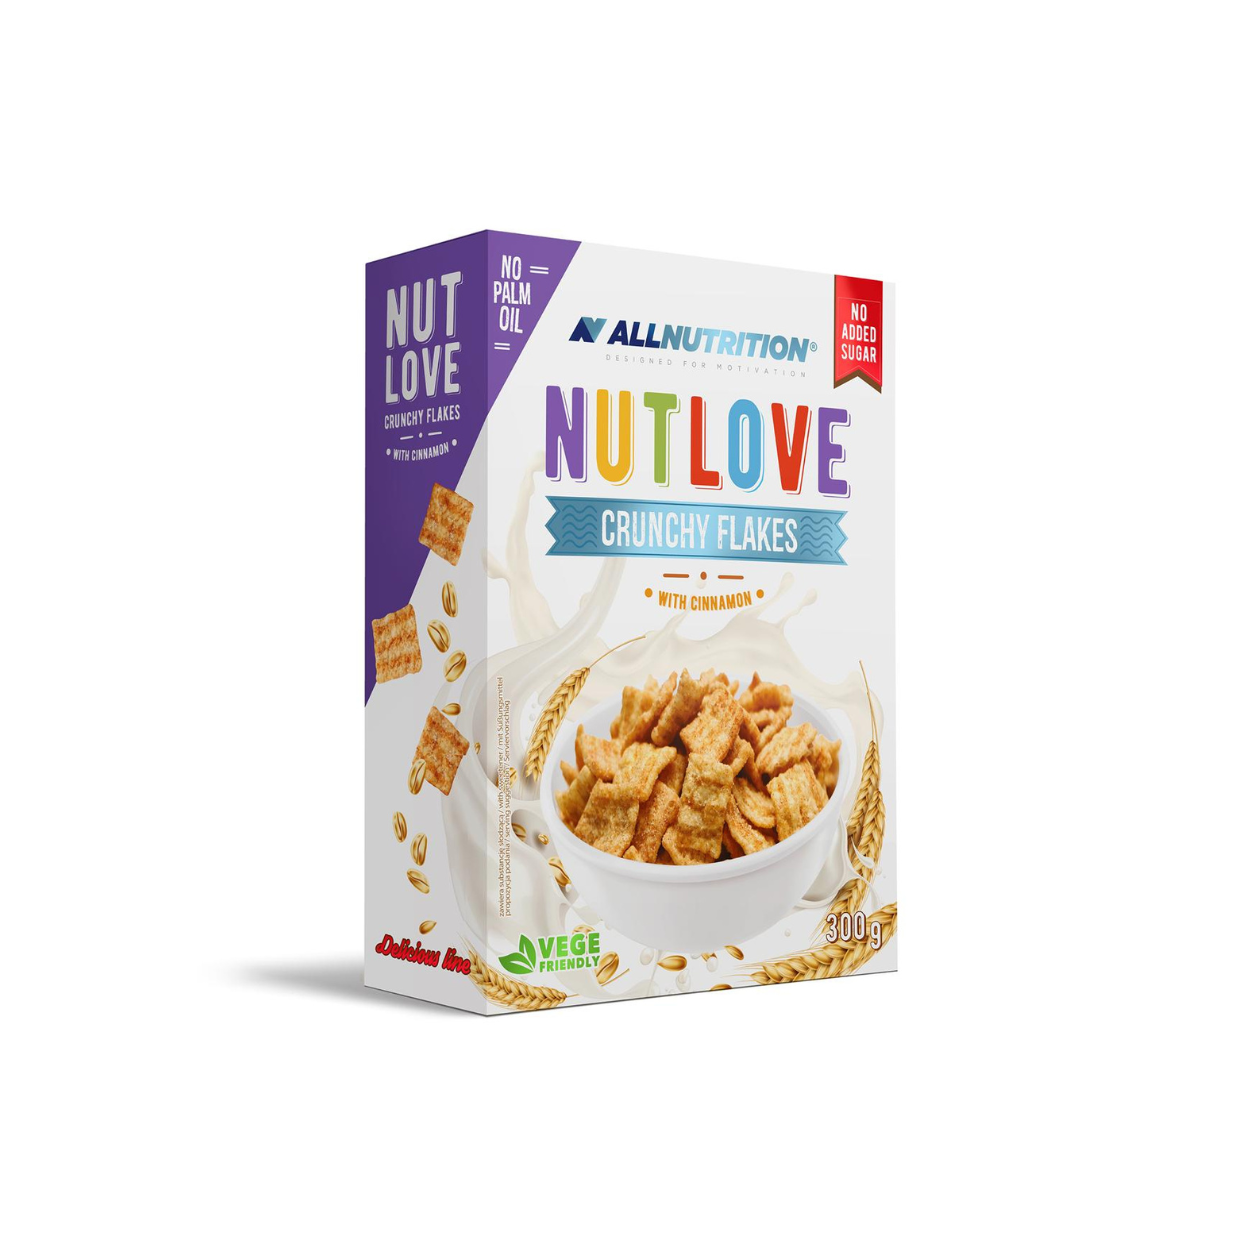 Allnutrition Nutlove Crunchy Flakes with Cinnamon (300g)